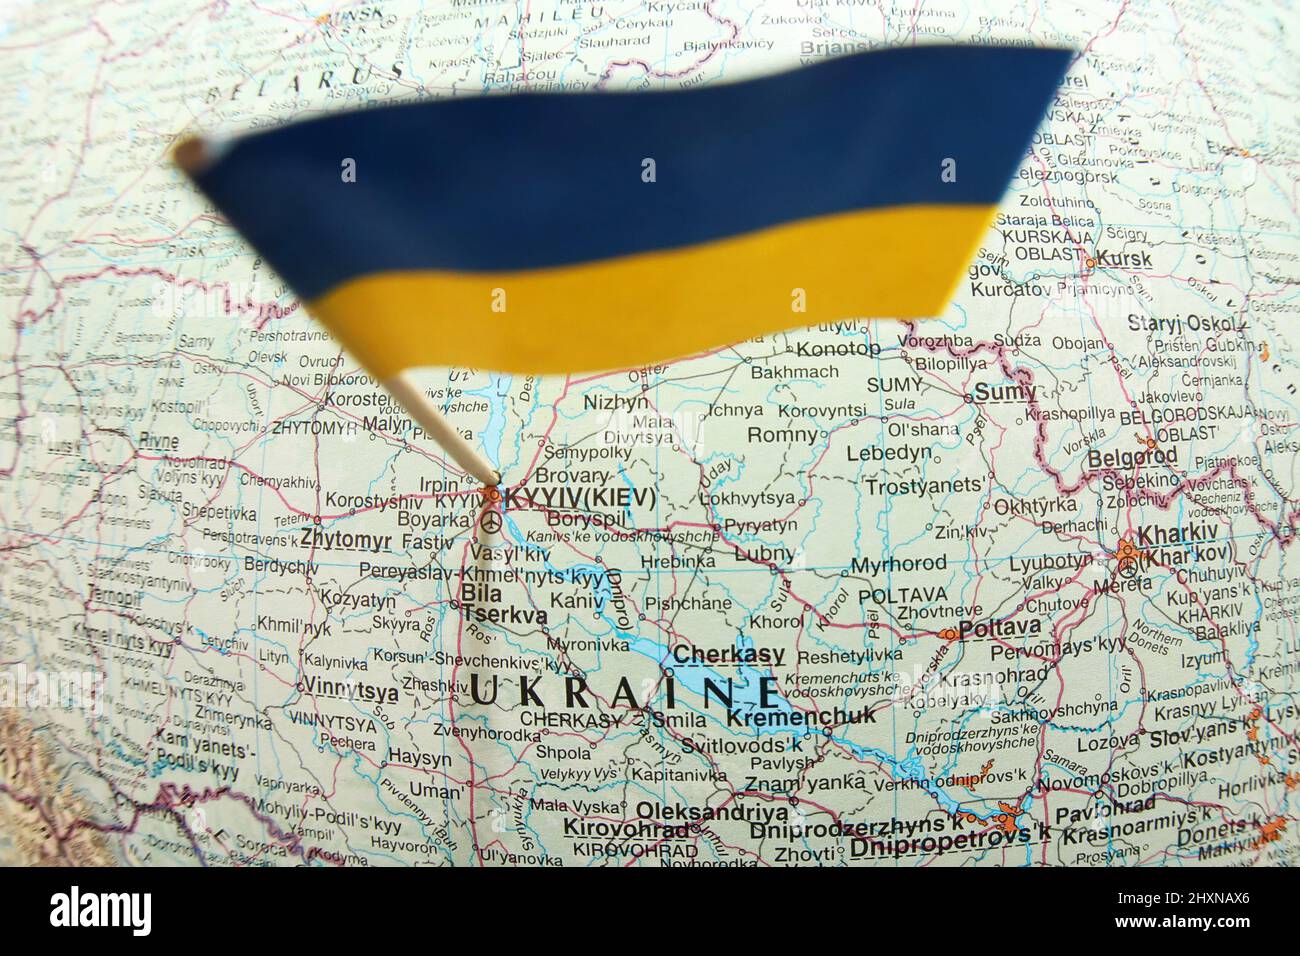 Gros plan oiseaux vue de l'oeil du drapeau jaune bleu ukrainien coincé dans une carte montrant la capitale Kiev et le mot Ukraine. Indique la position et les villes Banque D'Images